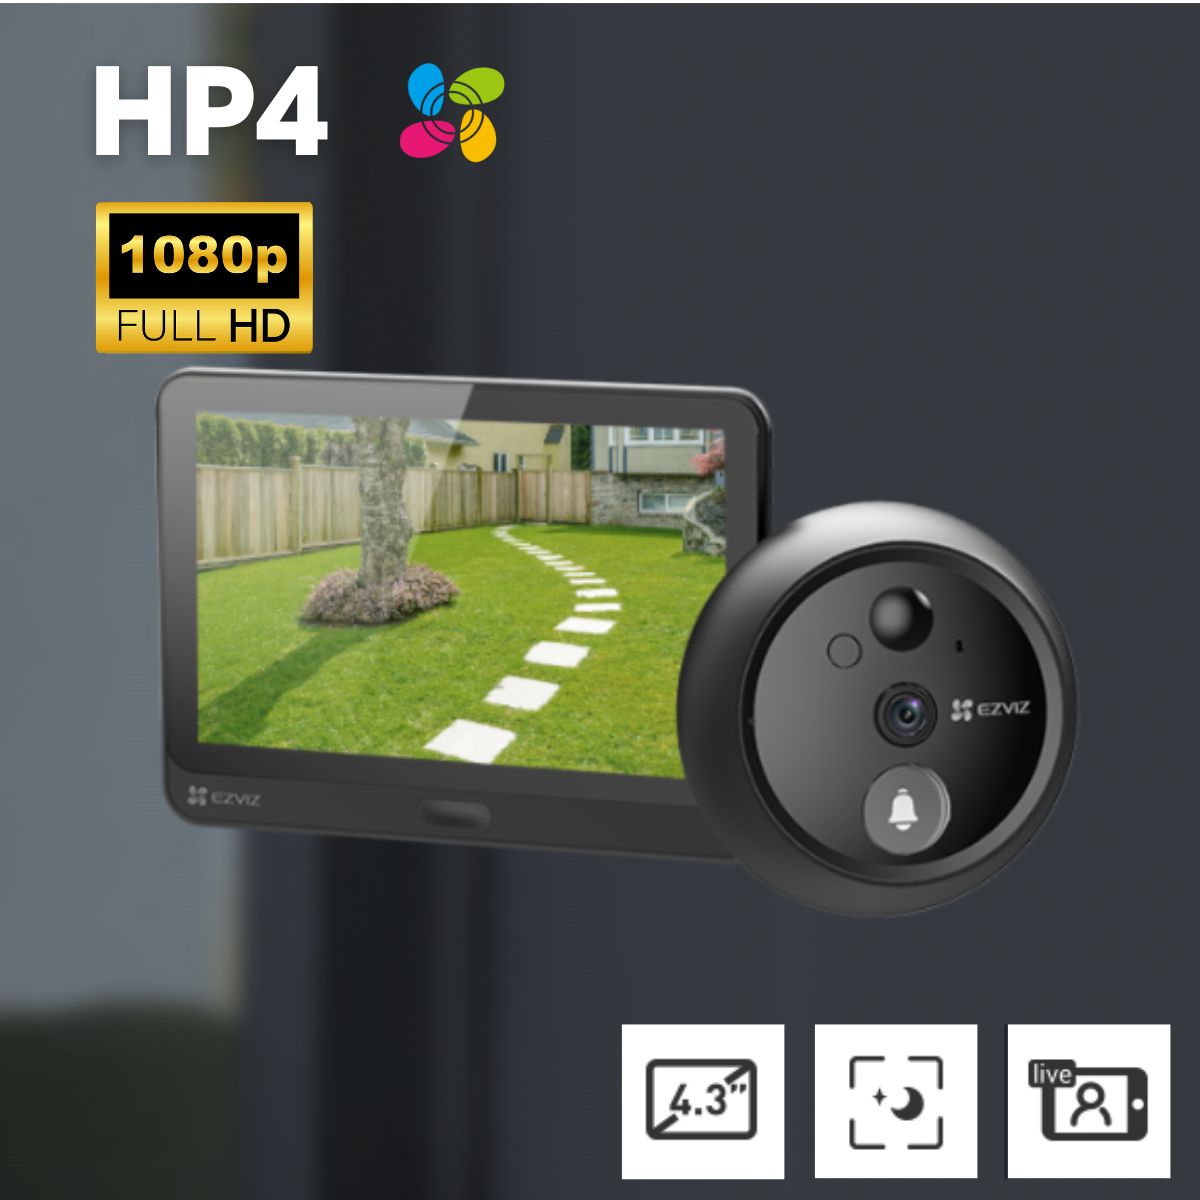 Chuông cửa tích hợp pin Lithium, màn hình Ezviz HP4 1080p 4.3 inch, xem trực tiếp, gọi 2 chiều, tầm nhìn ban đêm 3 mét 